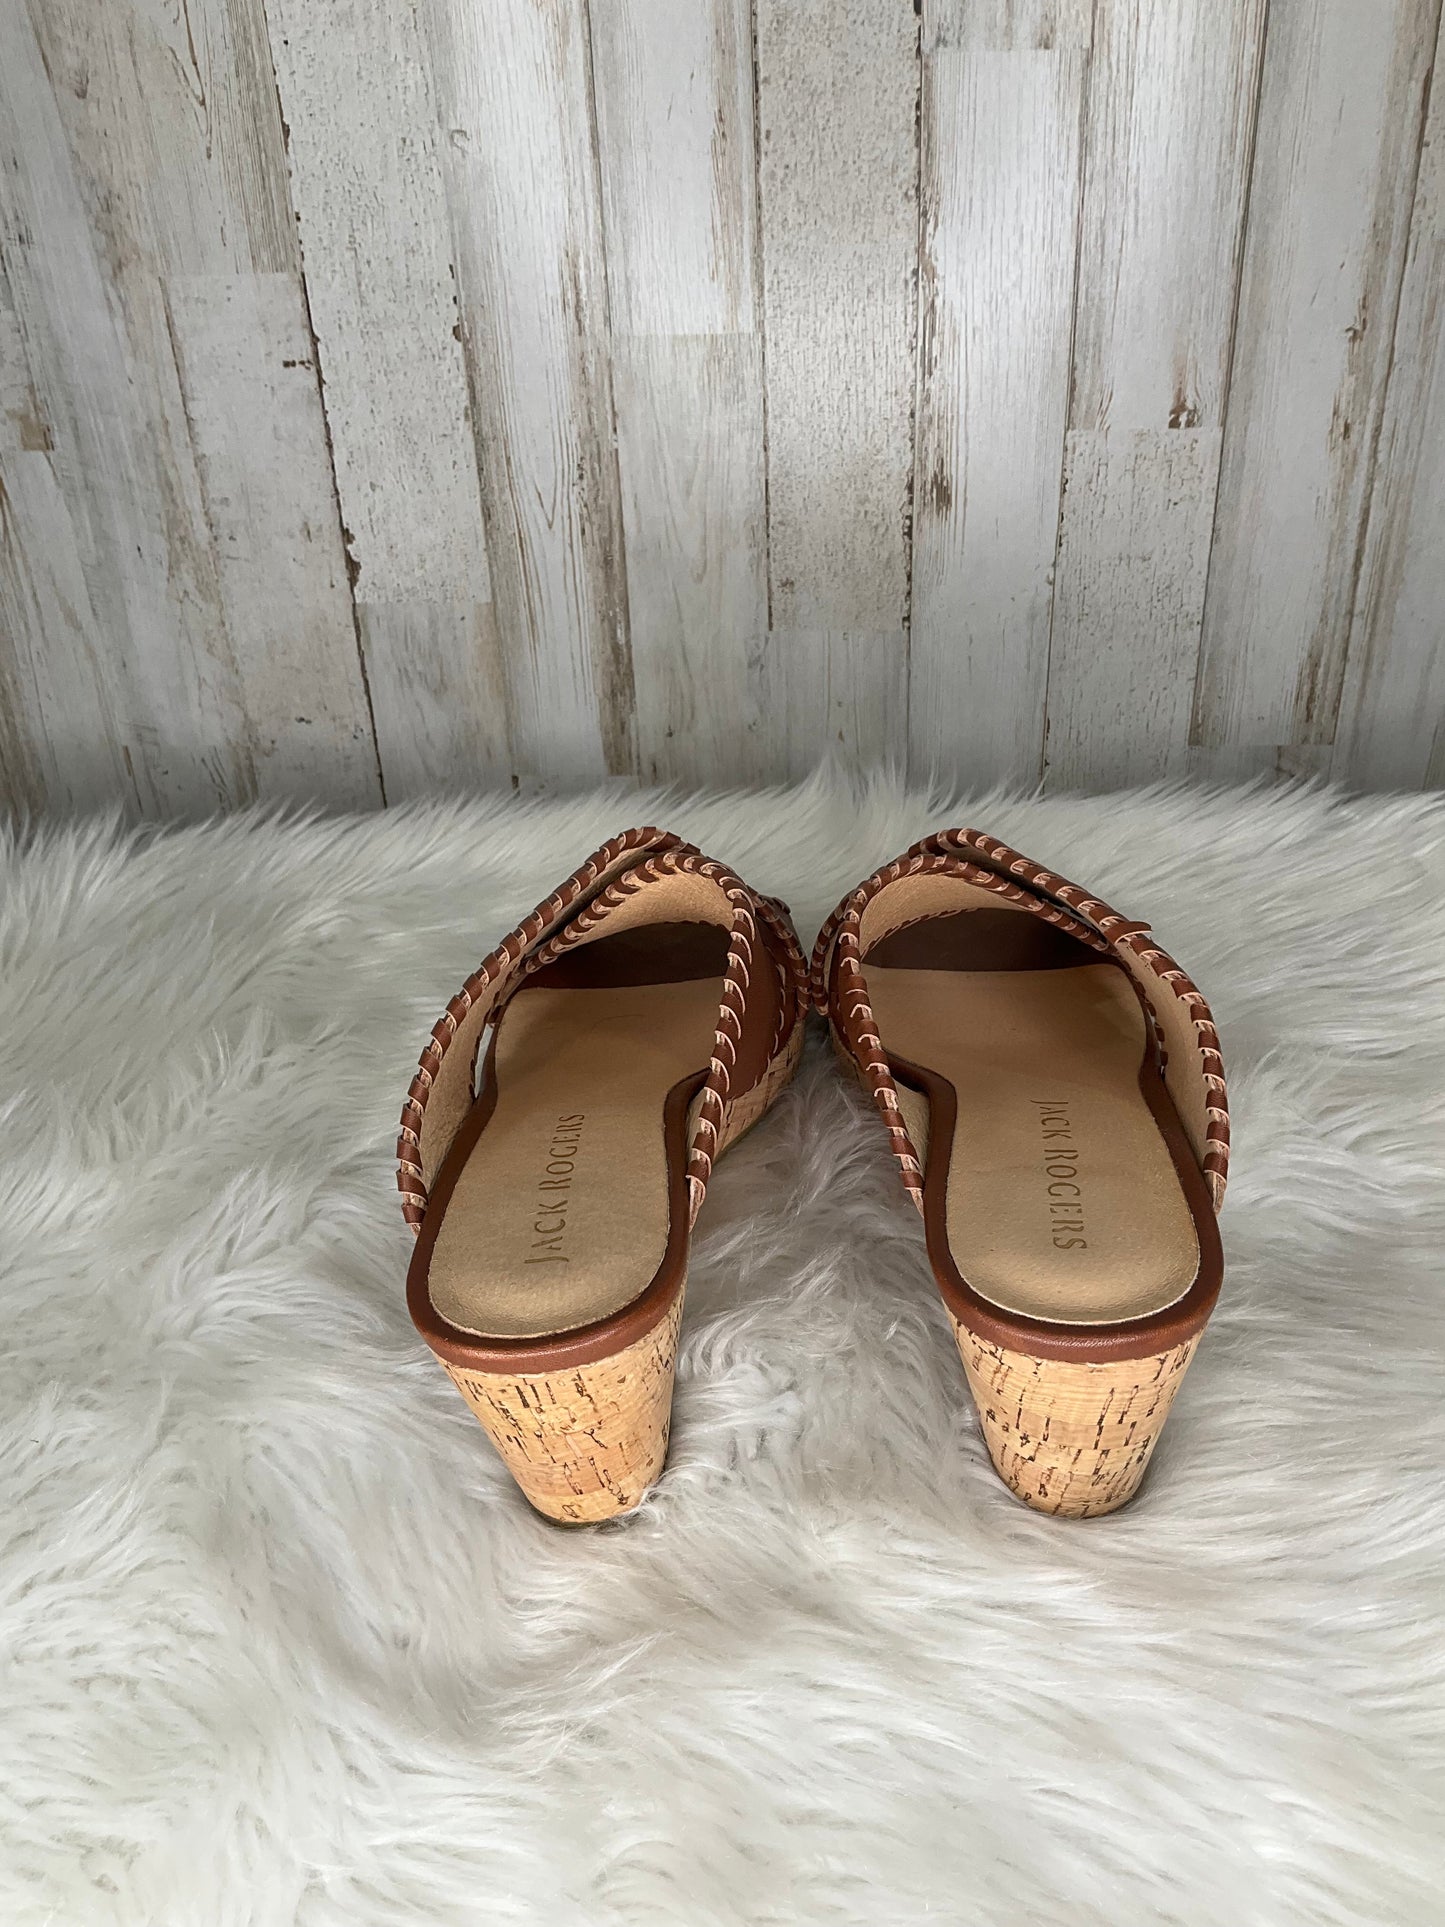 Sandals Heels Platform By Jack Rogers  Size: 8